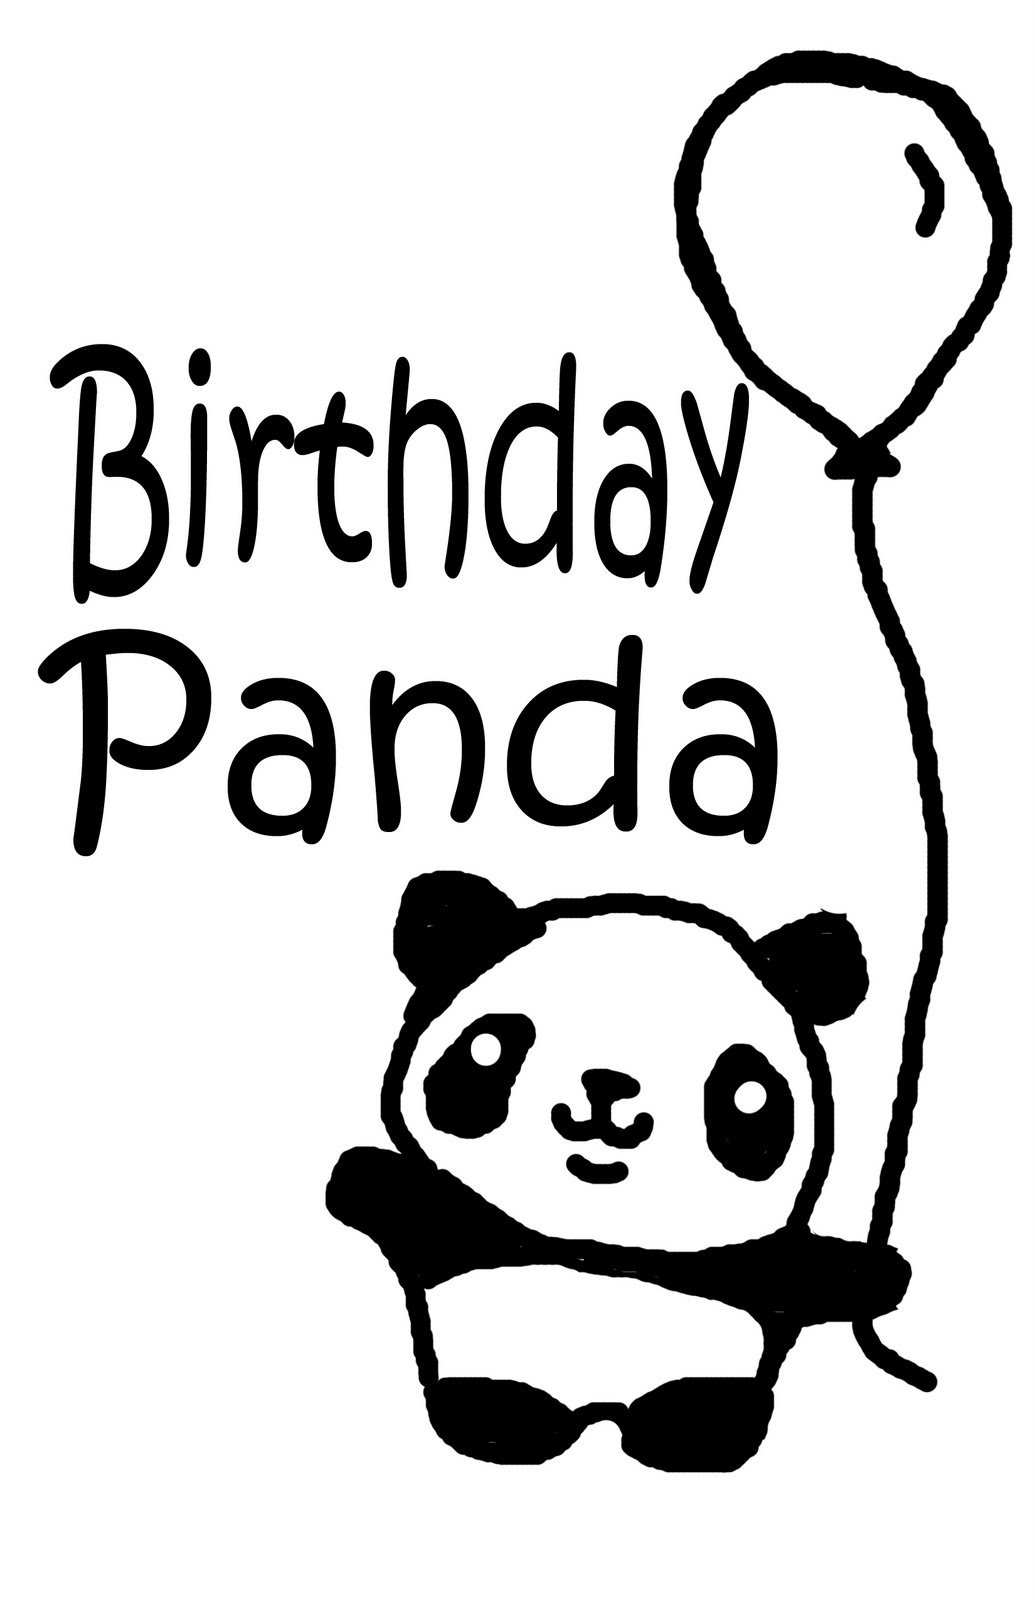 Images For > Cute Panda Drawings Tumblr